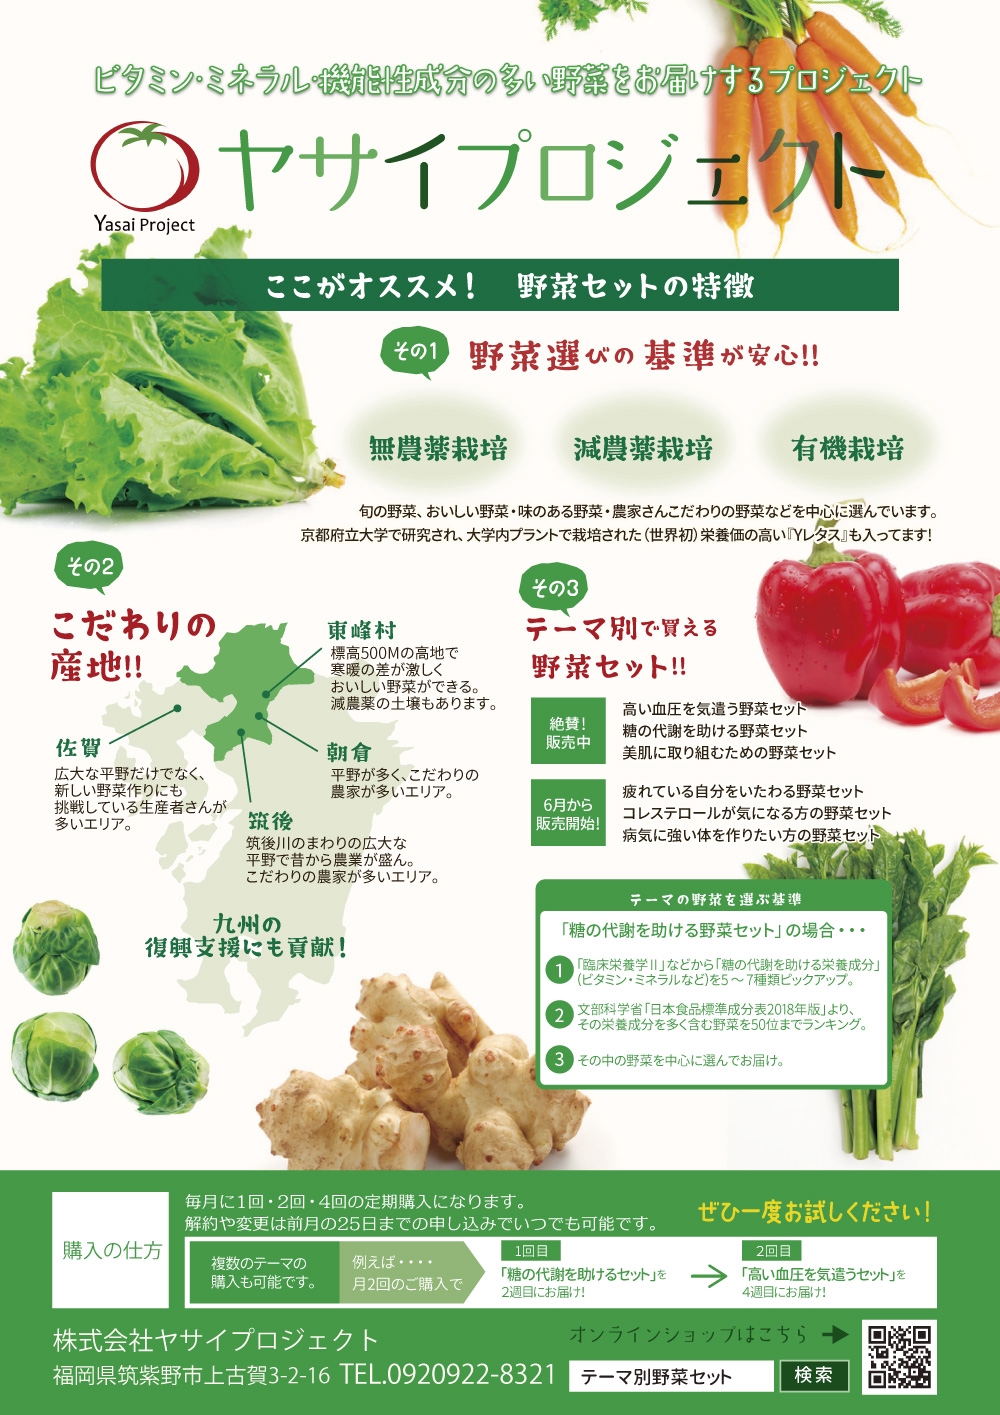 朝倉・東峰村・筑後生まれの機能性野菜をテーマ別に まとめた野菜セットの個人販売